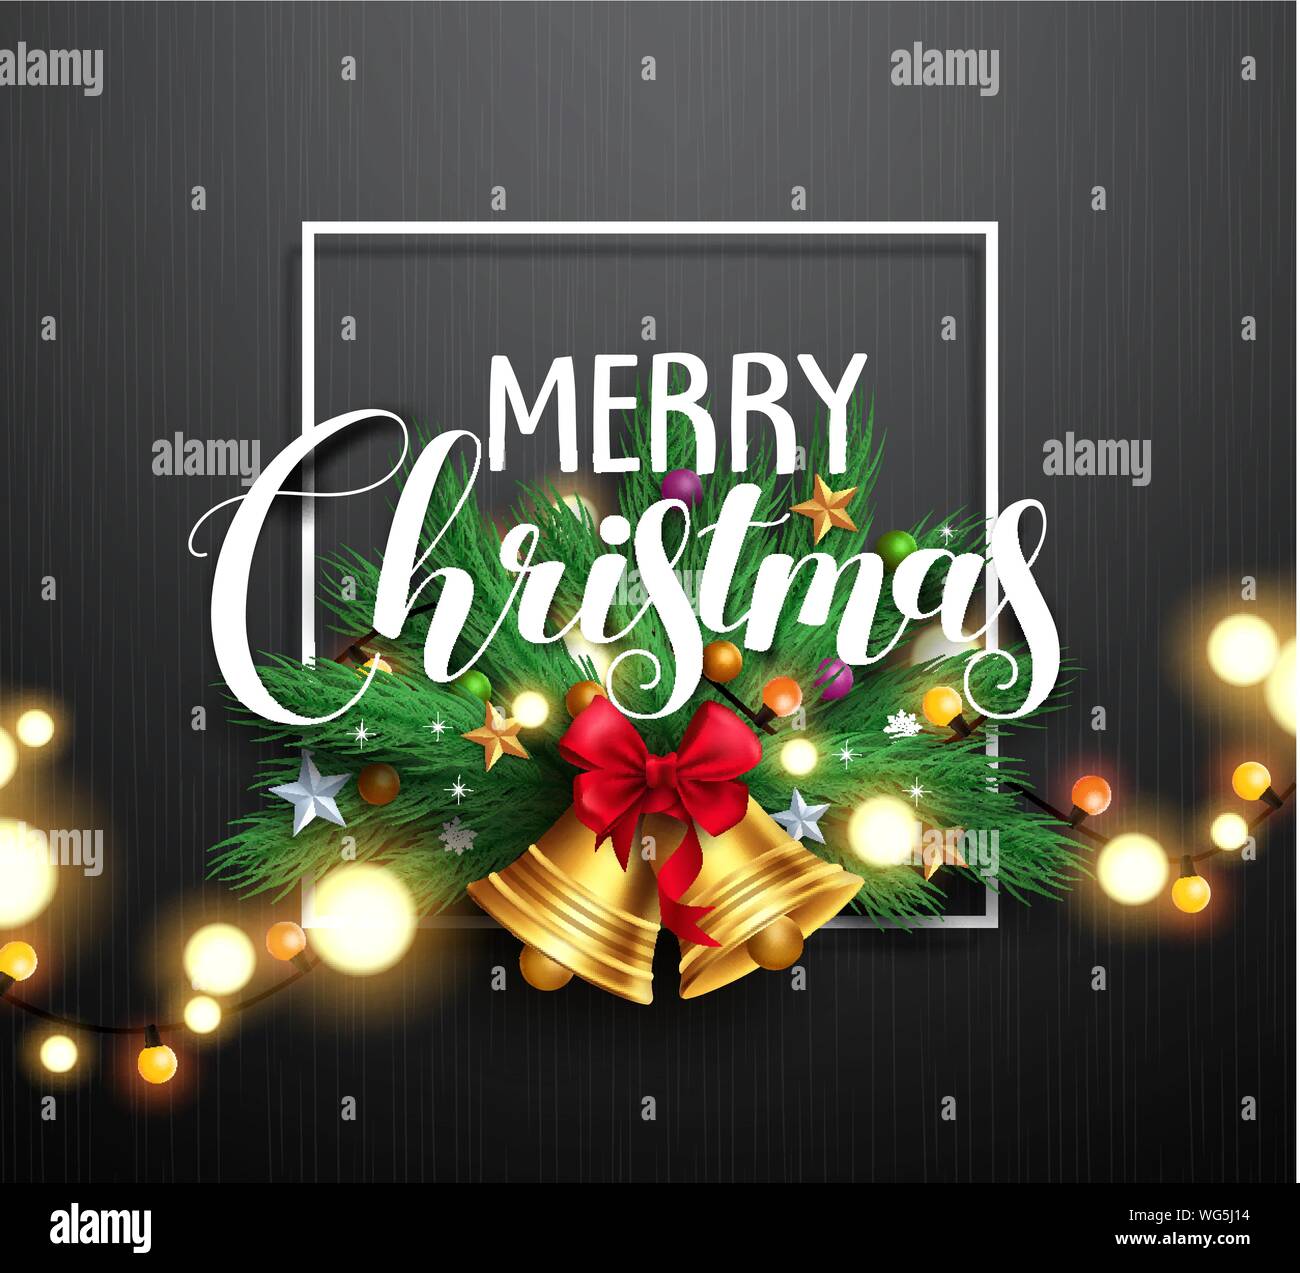 Frohe Weihnachten Gruß Typografie und Weihnachten Kranz mit gold Glocken  und Helle unscharfe Weihnachtsbeleuchtung in Schwarz strukturierten  Hintergrund. Vektor Stock-Vektorgrafik - Alamy